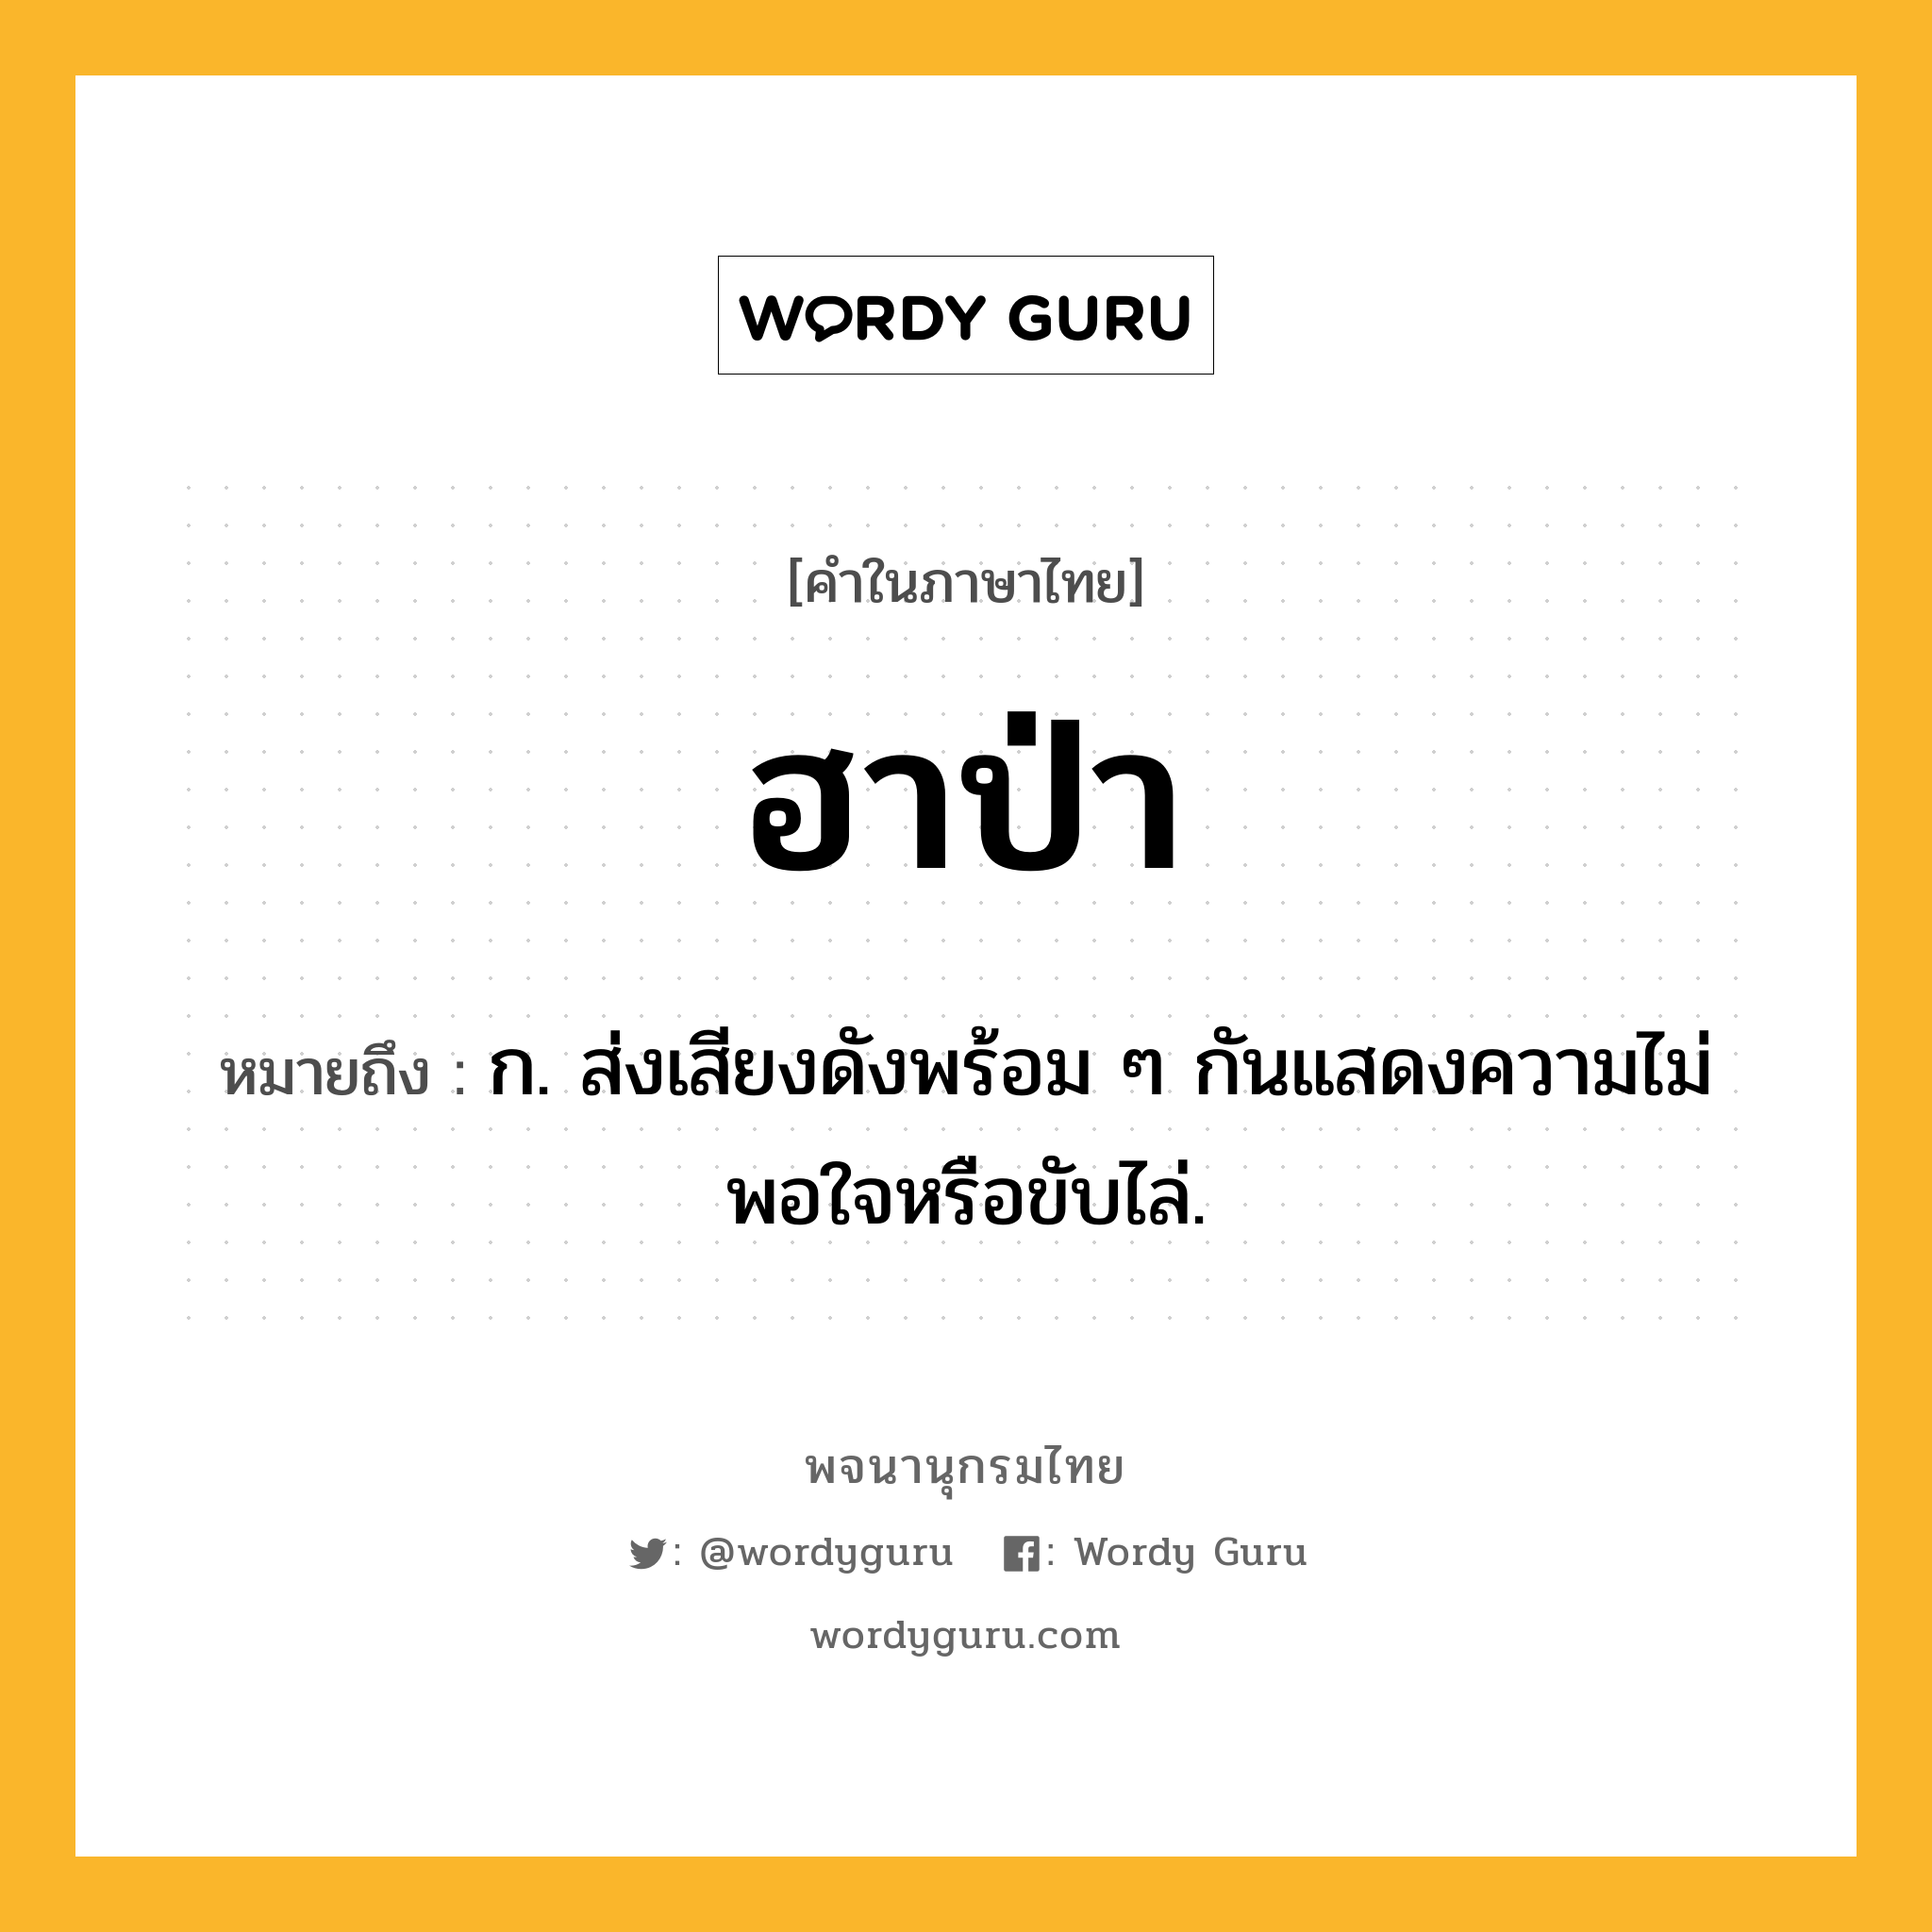 ฮาป่า ความหมาย หมายถึงอะไร?, คำในภาษาไทย ฮาป่า หมายถึง ก. ส่งเสียงดังพร้อม ๆ กันแสดงความไม่พอใจหรือขับไล่.